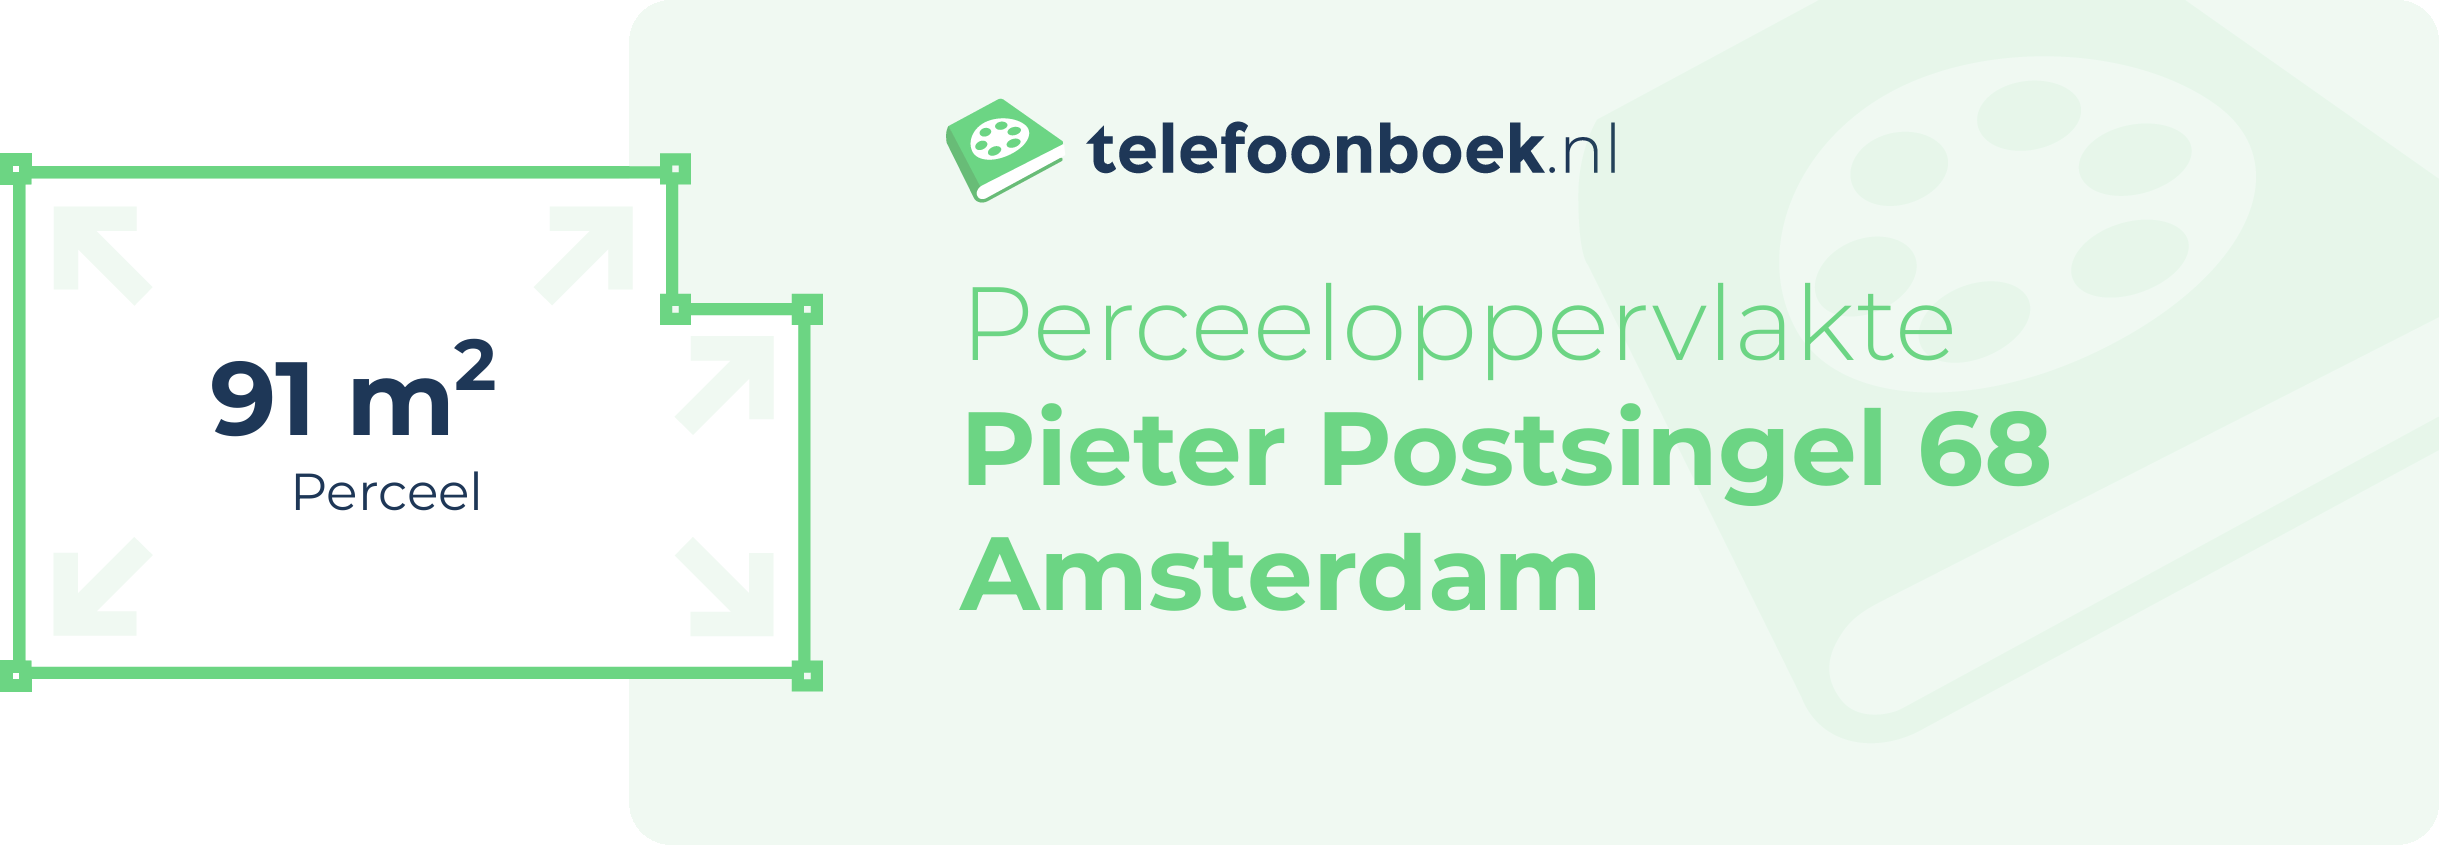 Perceeloppervlakte Pieter Postsingel 68 Amsterdam